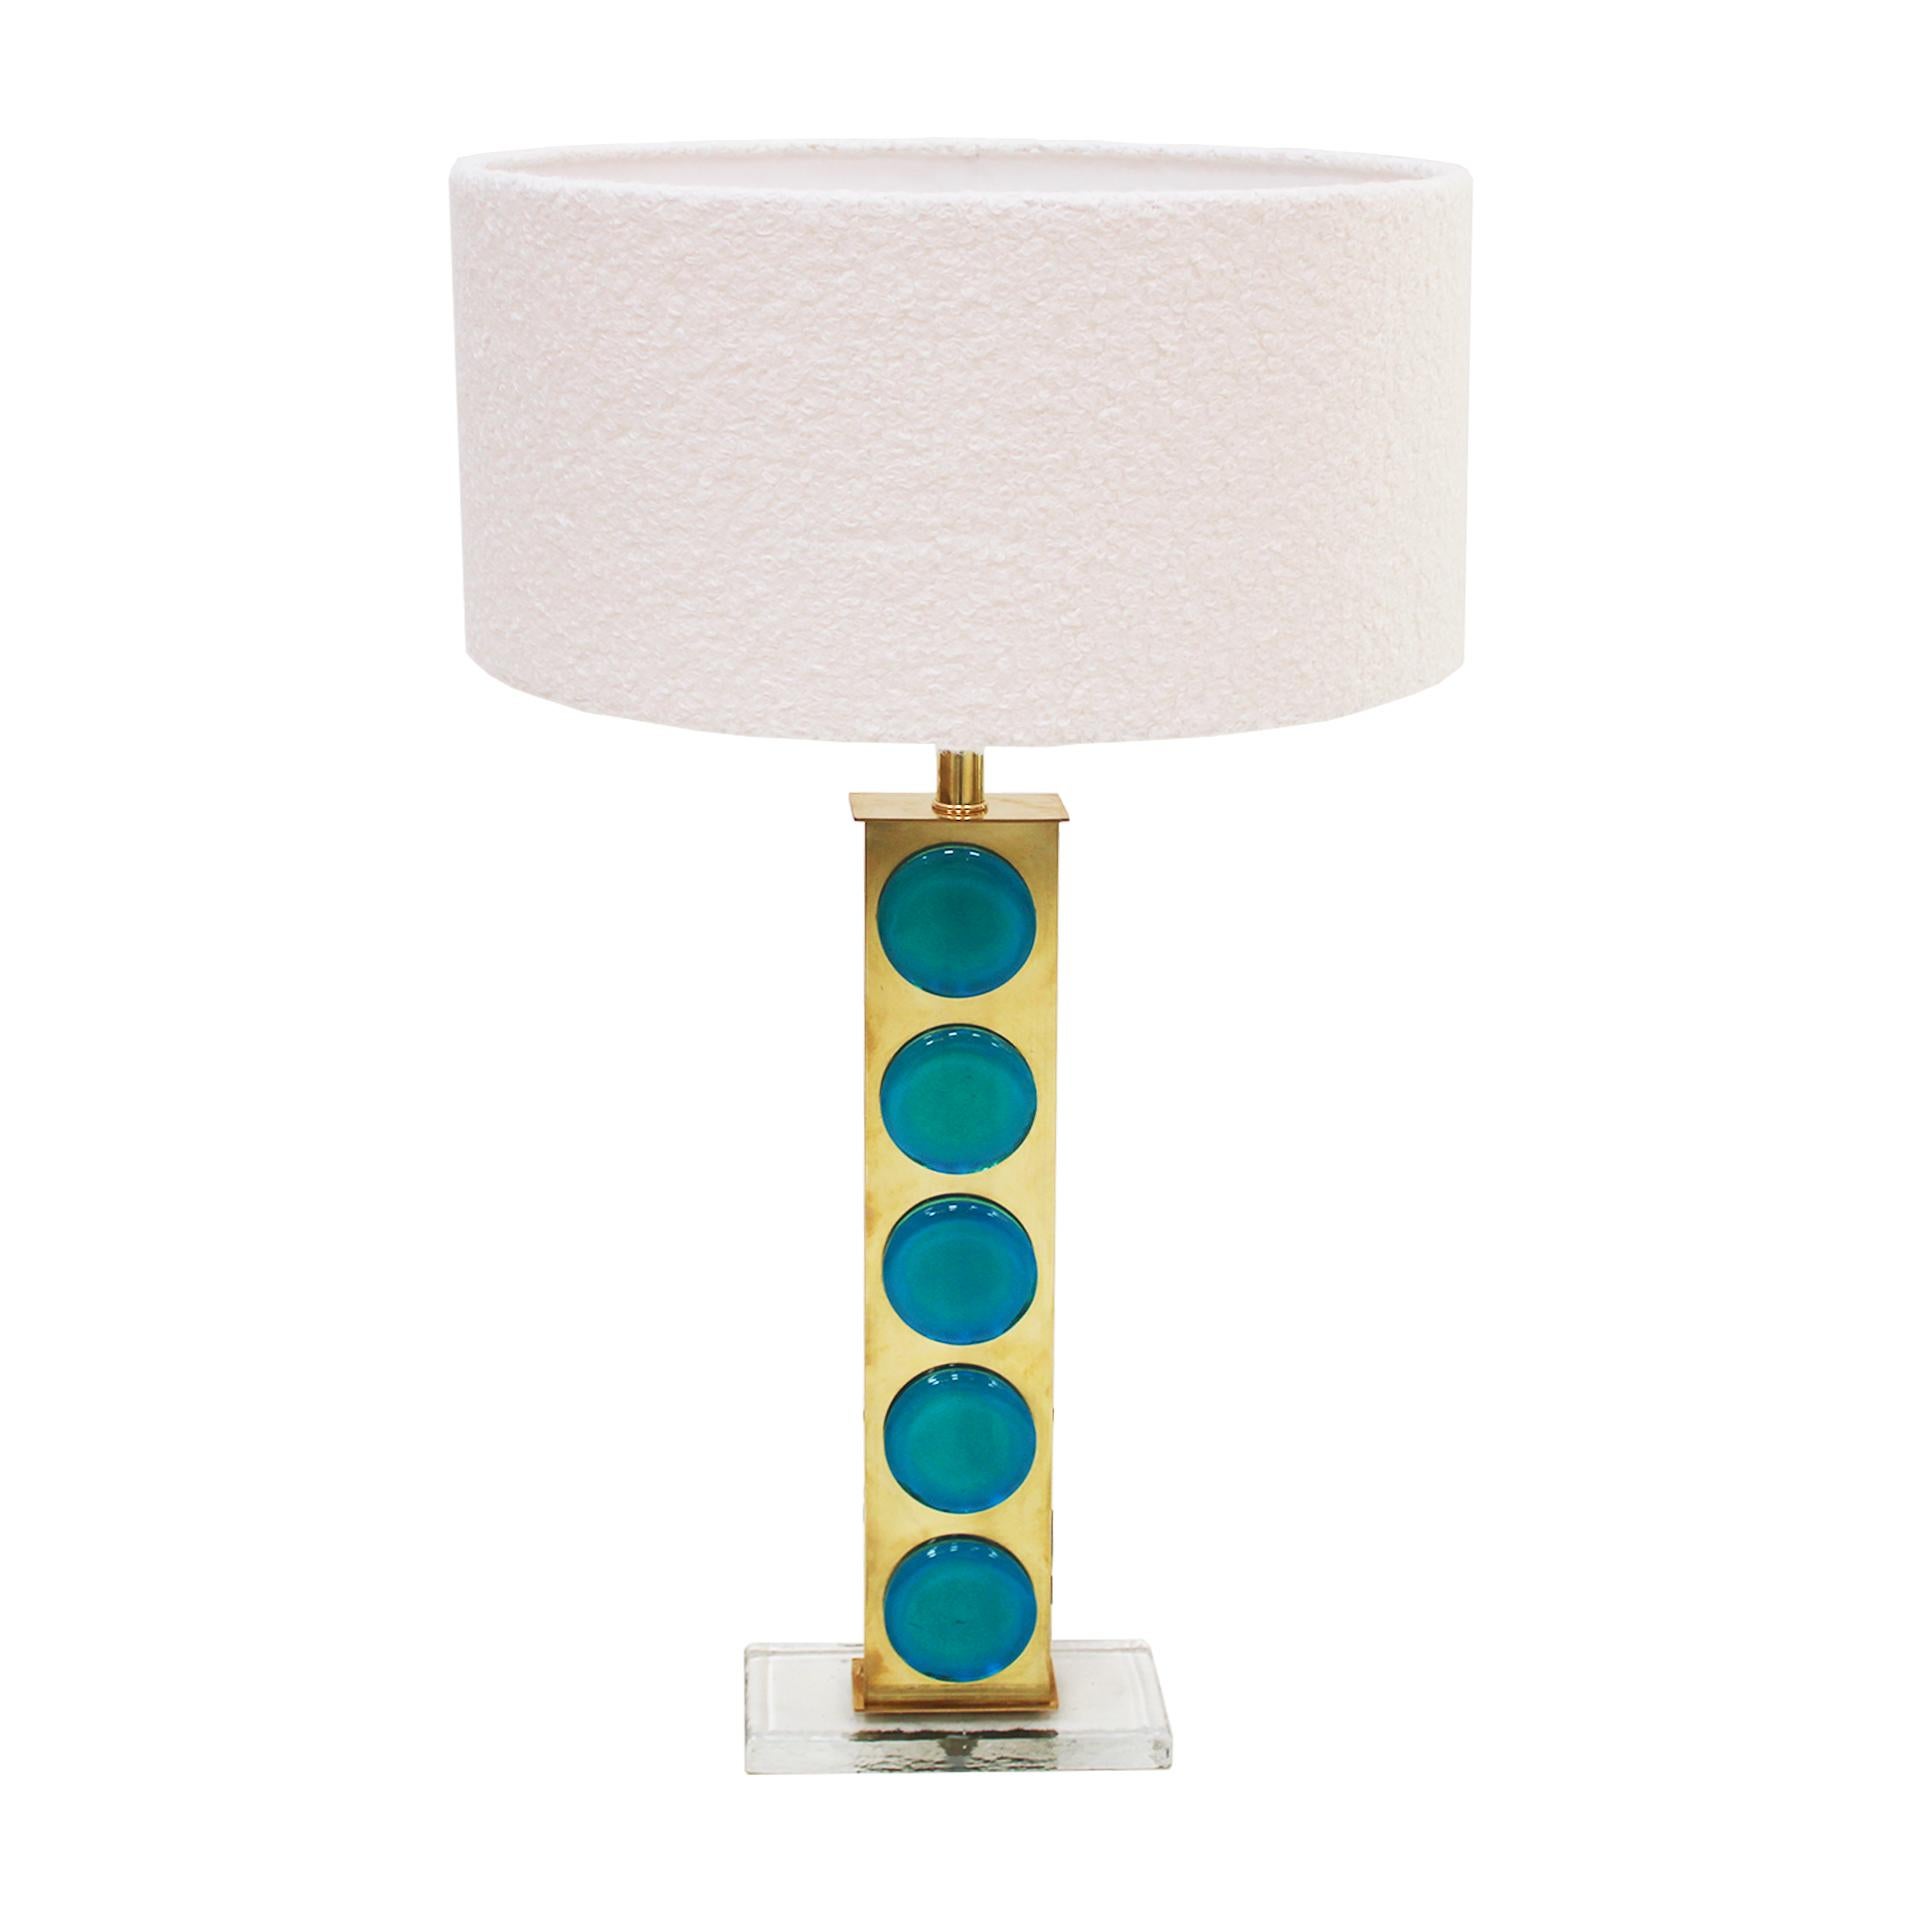 Paire de lampes de table italiennes de style Murano avec structure en laiton et pièces en verre murano bleu clair. Écrans circulaires en bouclette blanche.

Cette lampe à poser de style moderne du milieu du siècle présente un beau mélange d'élégance